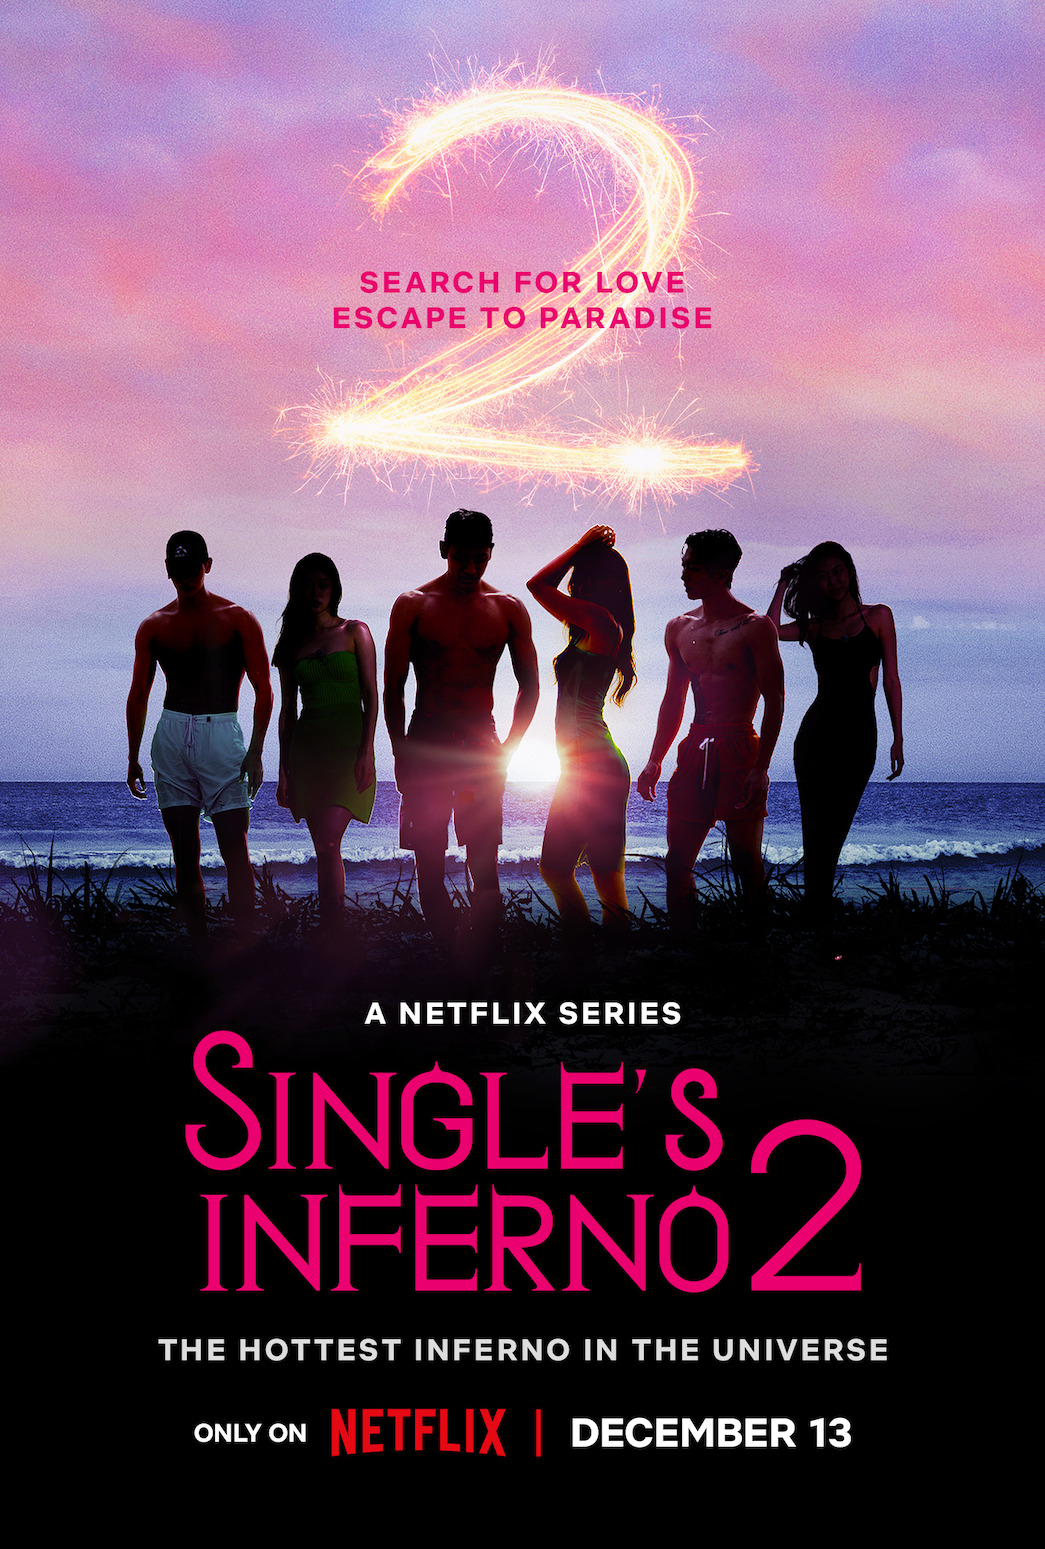 Single’s Inferno 2: When is it premiering on Netflix?